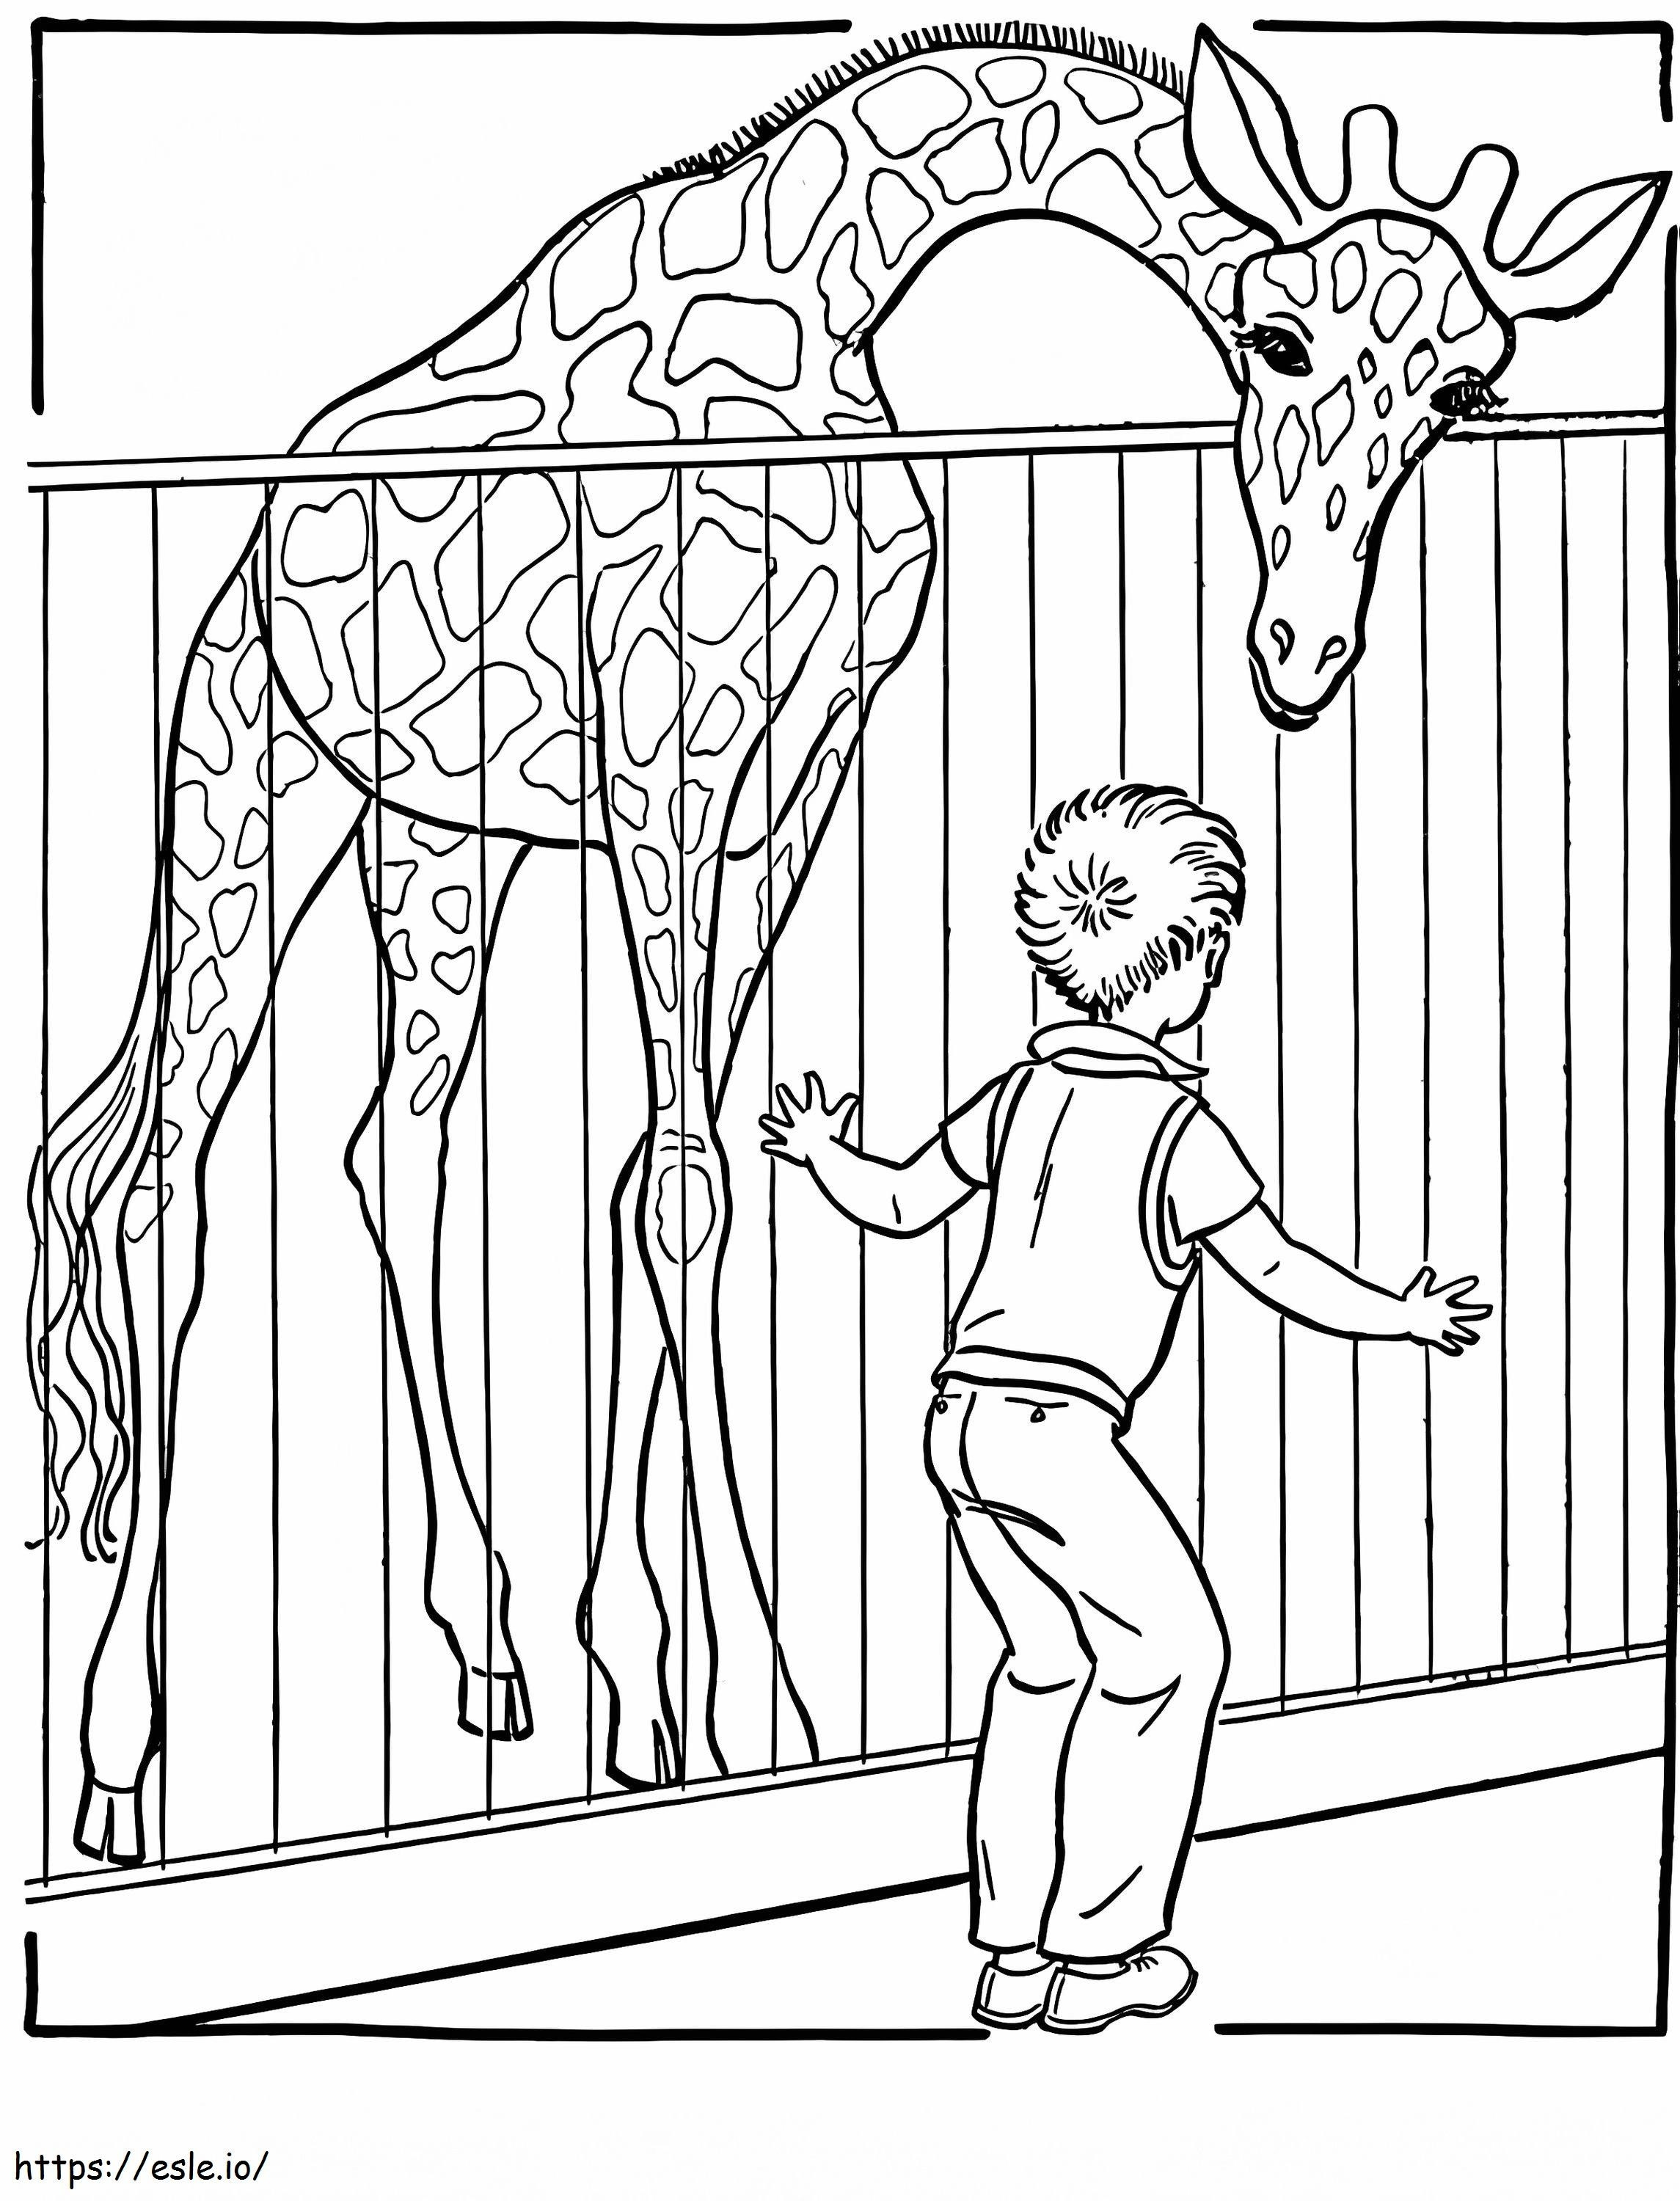 Girafa e criança do zoológico para colorir